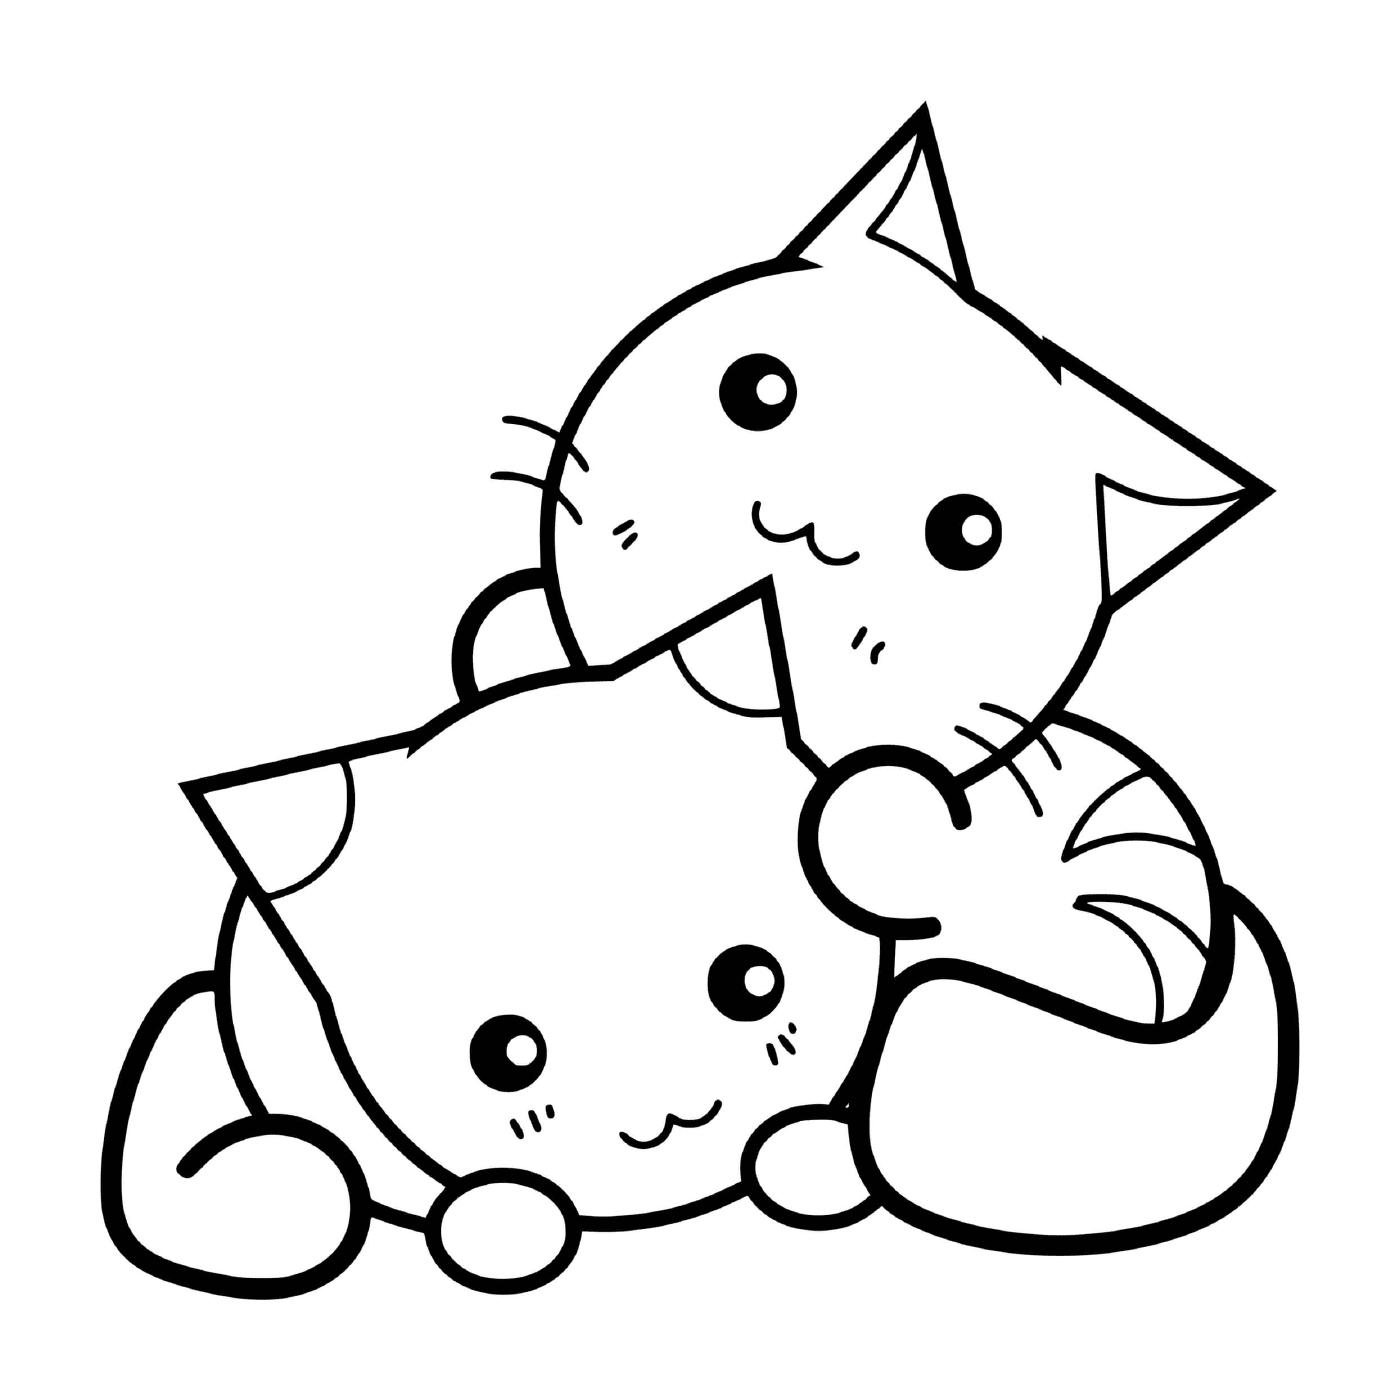  Gatito Kawaii abrazando a otro gatito 